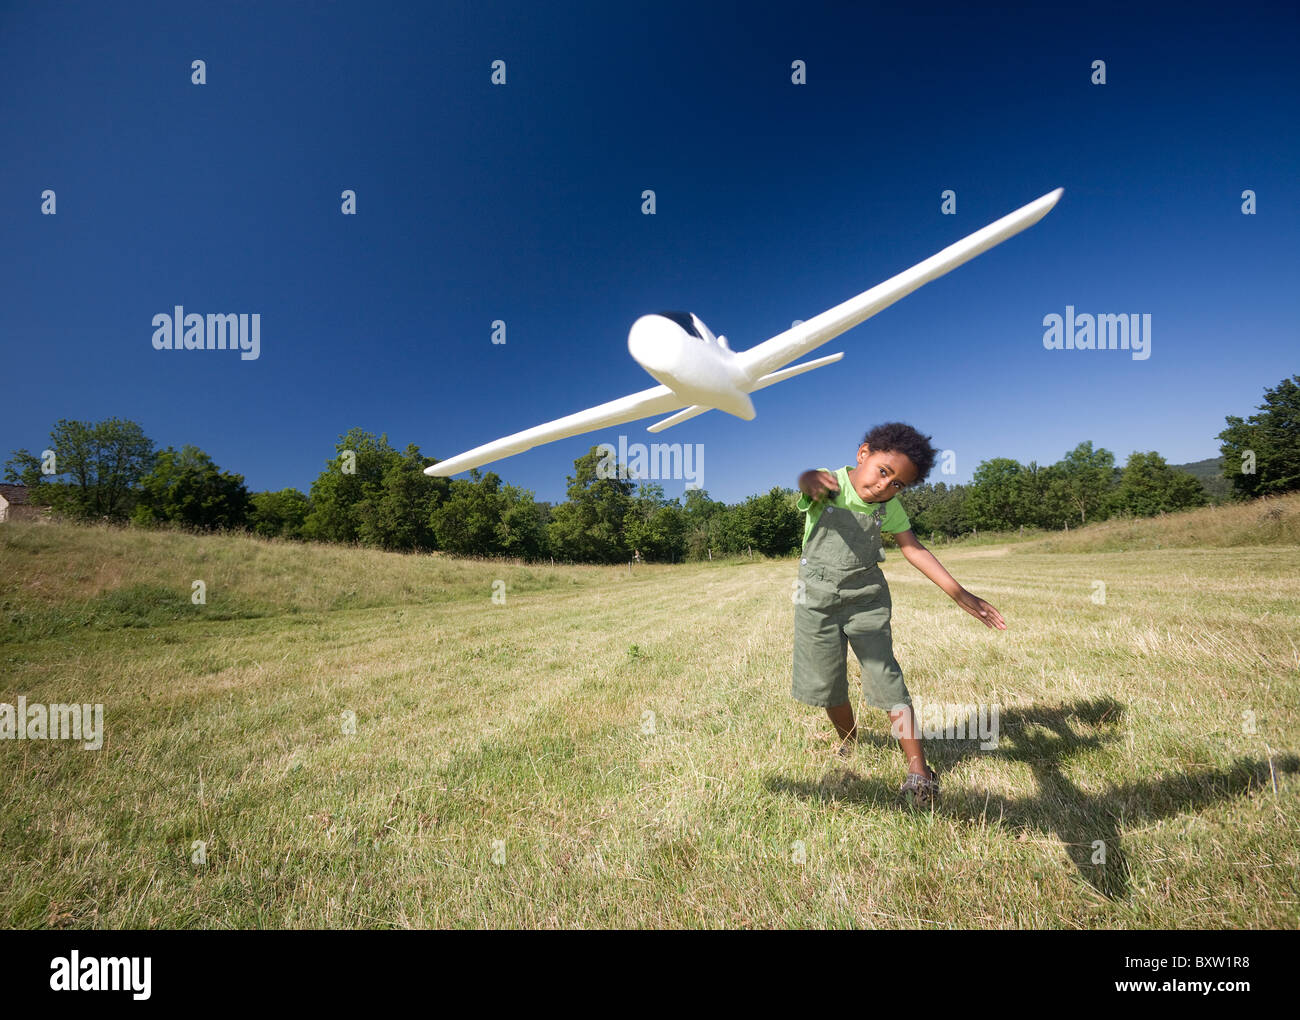 A little black boy playing with a scale model of a plane (Allier - France). Petit garçon jouant avec un modèle réduit d'avion. Stock Photo